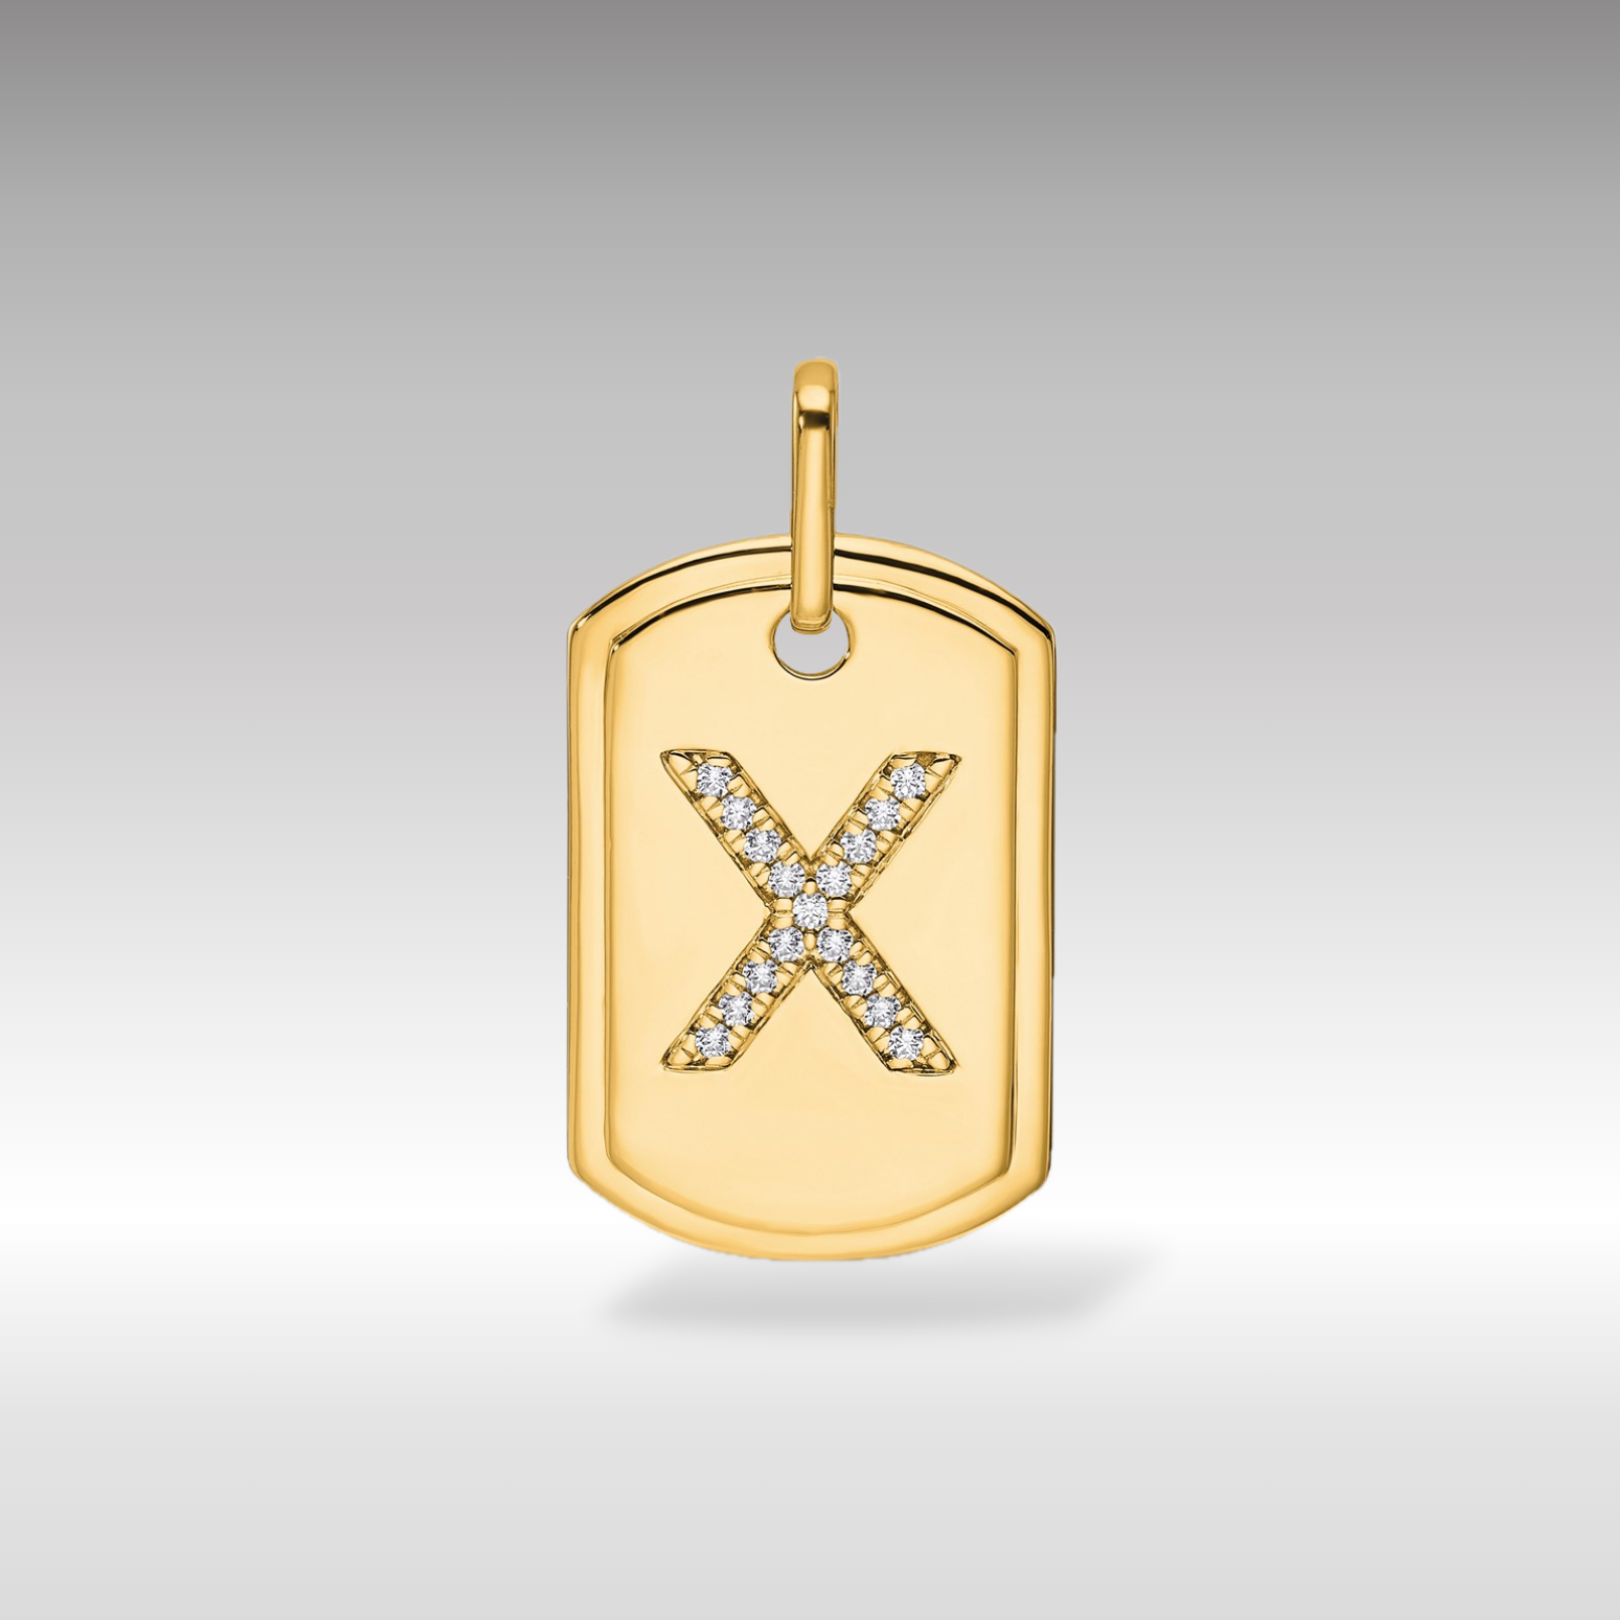 14K Gold Initial "X" Dog Tag With Genuine Diamonds - Charlie & Co. Jewelry